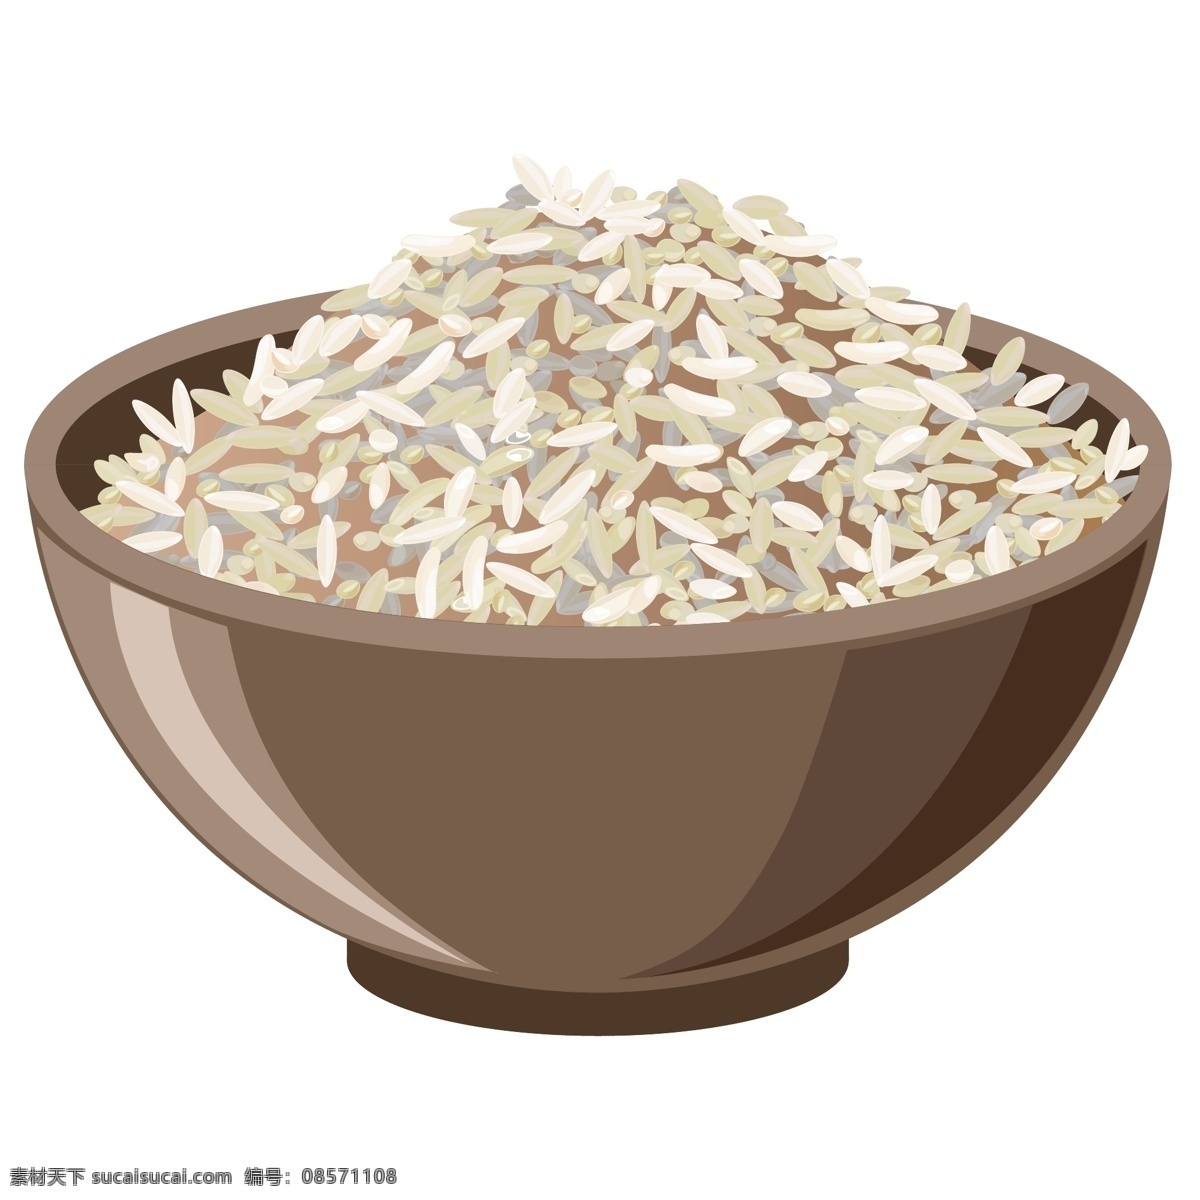 大米饭 饭碗 米 米粒 大米粒 大米饭碗